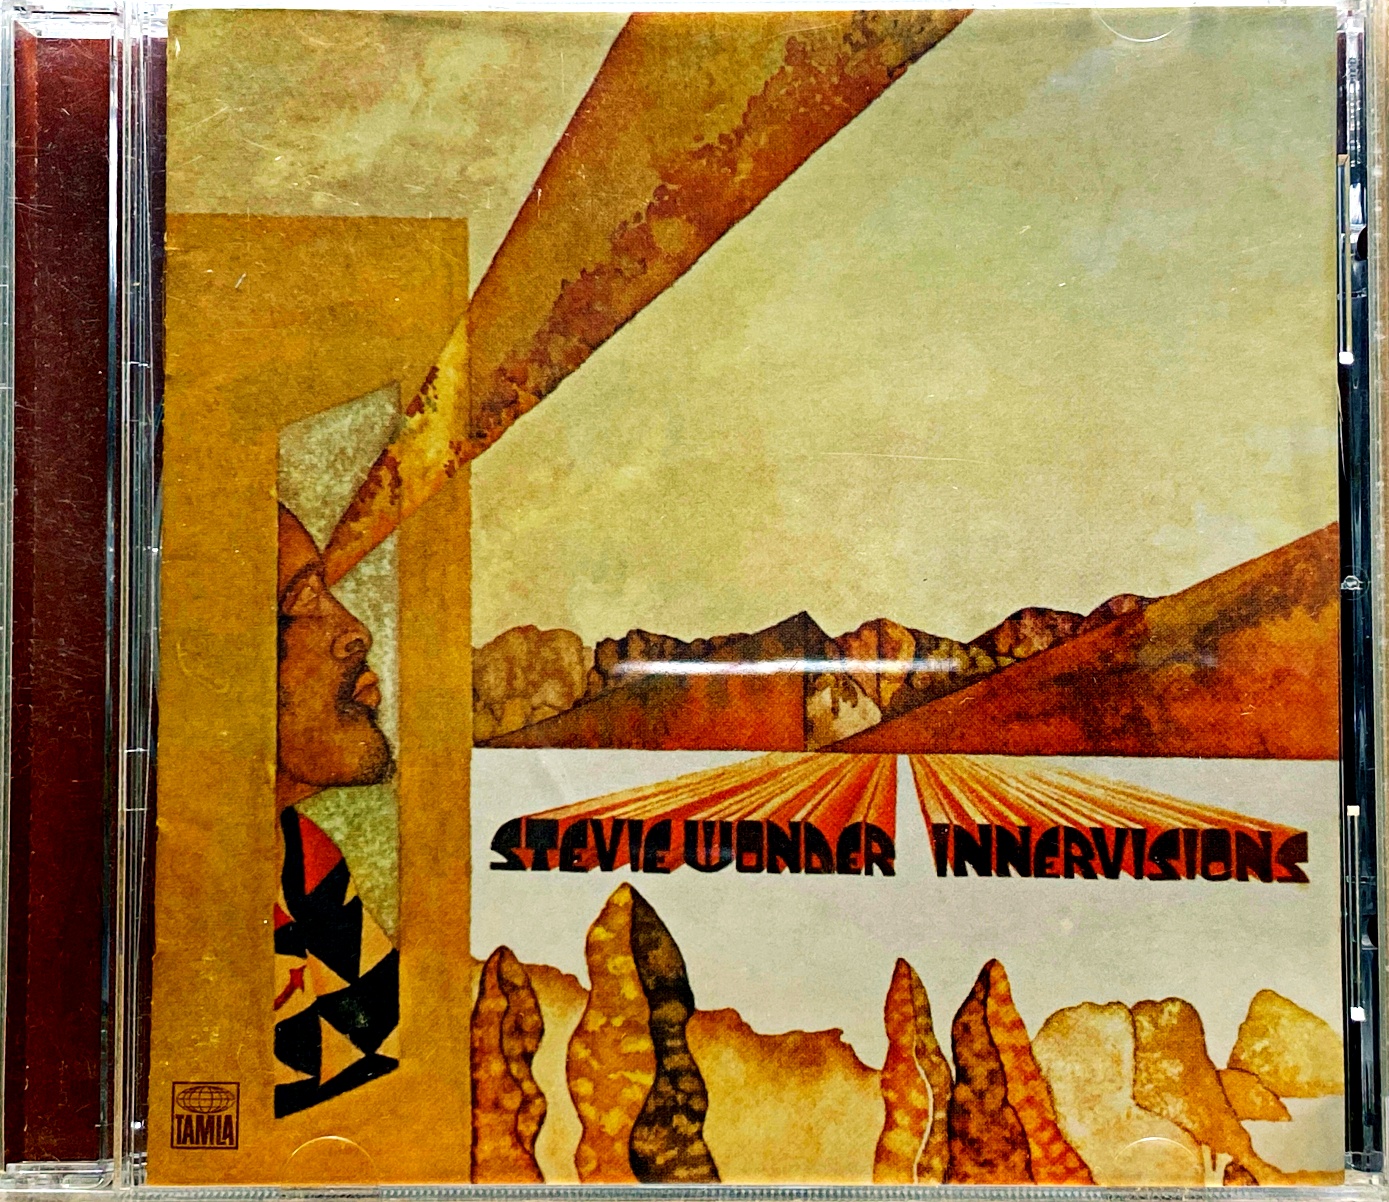 CD Stevie Wonder – Innervisions